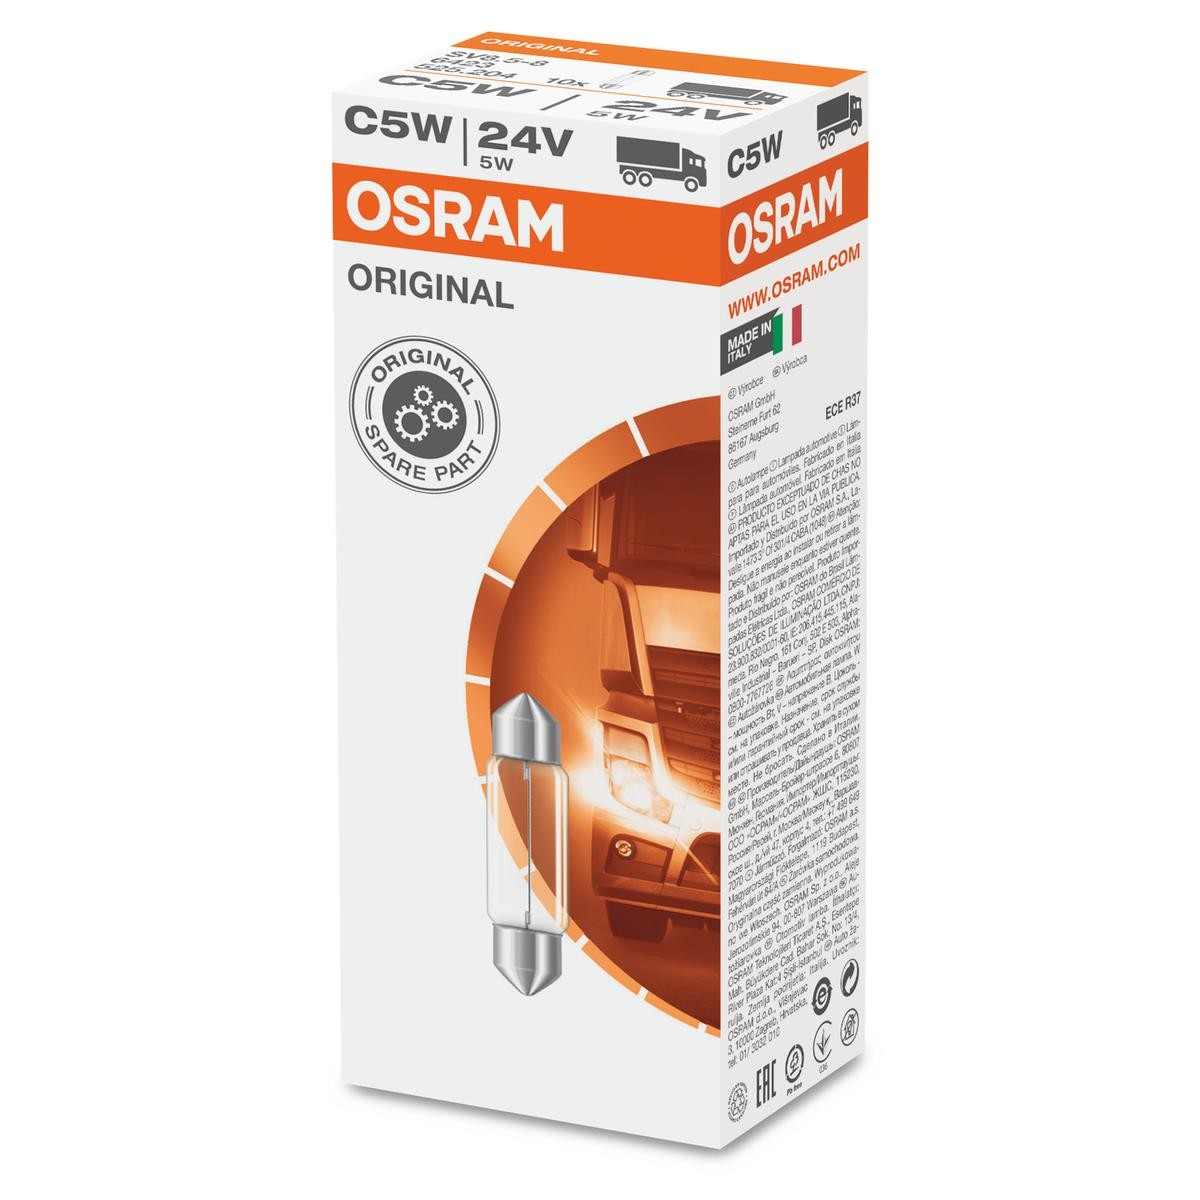 6423 OSRAM Number plate light bulb PEUGEOT 24V 5W, C5W, SV8.5-8